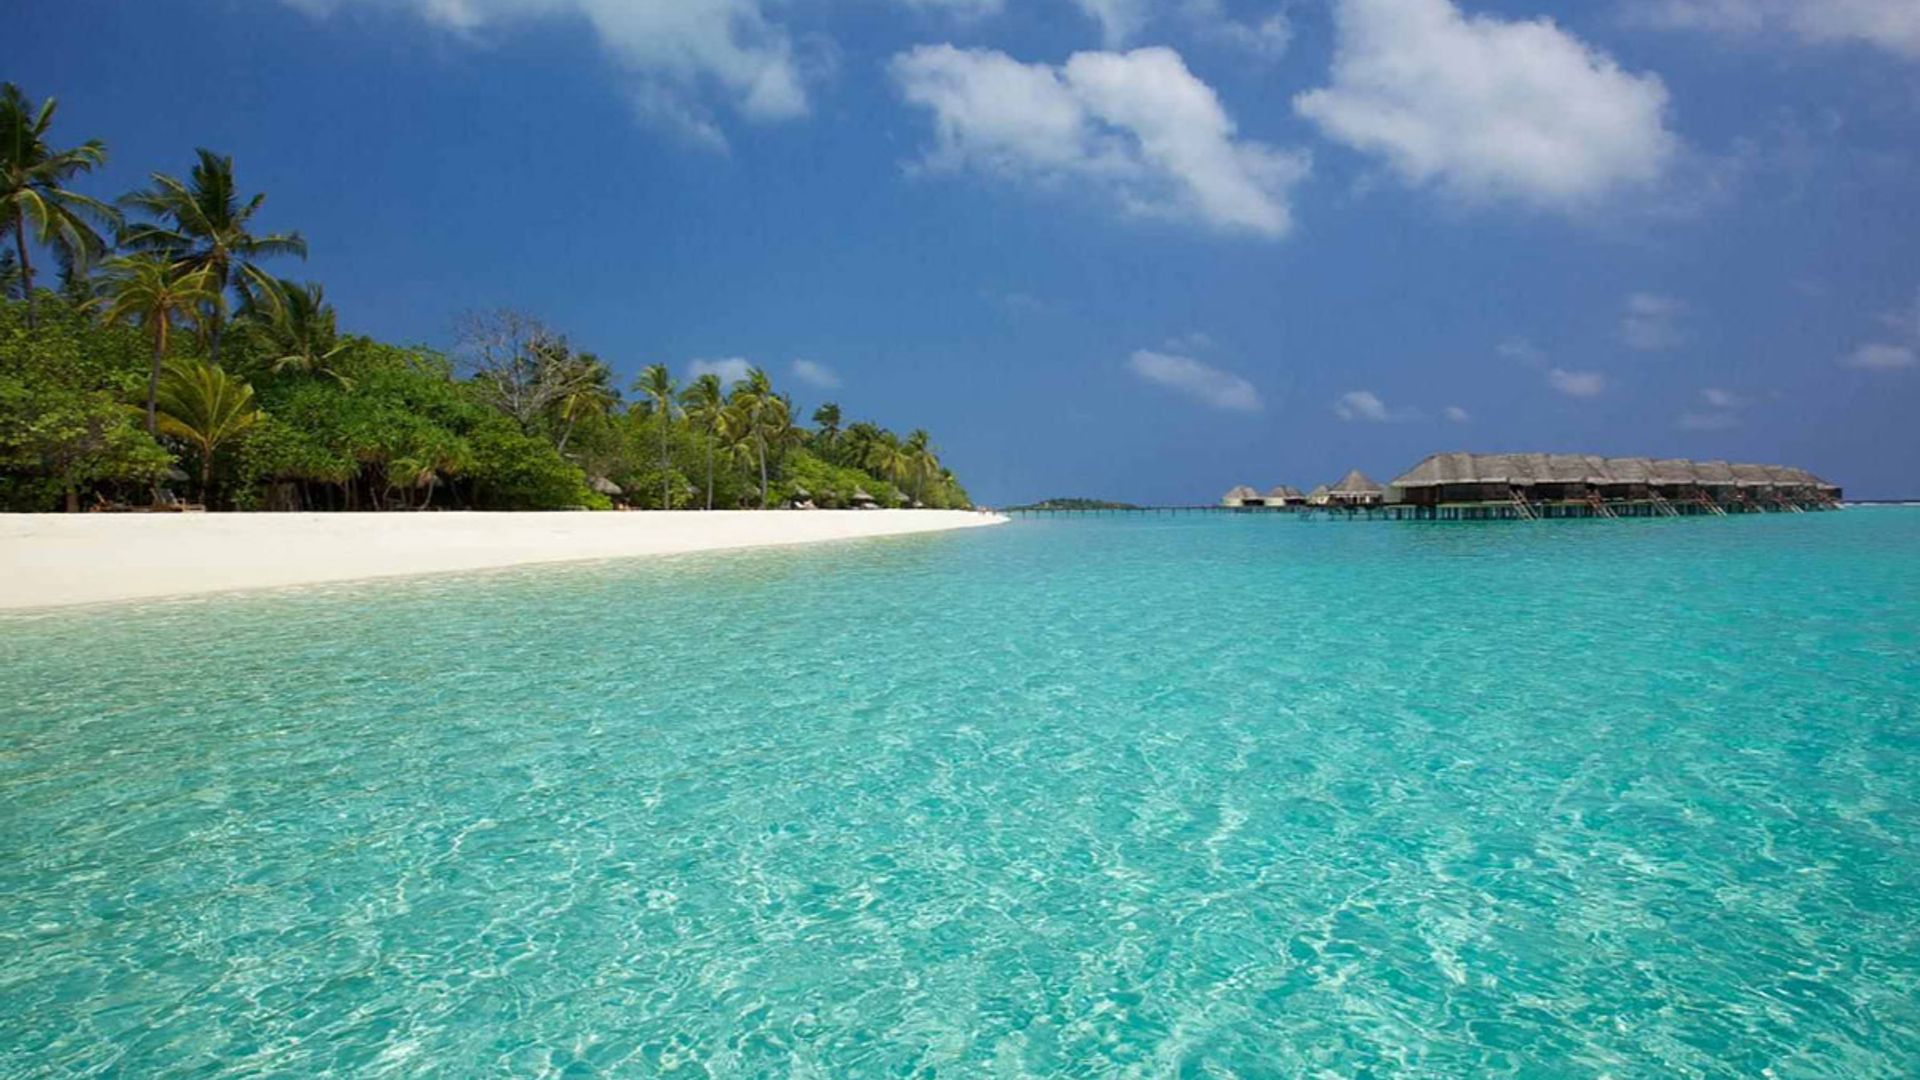 kanuhura maldives resort